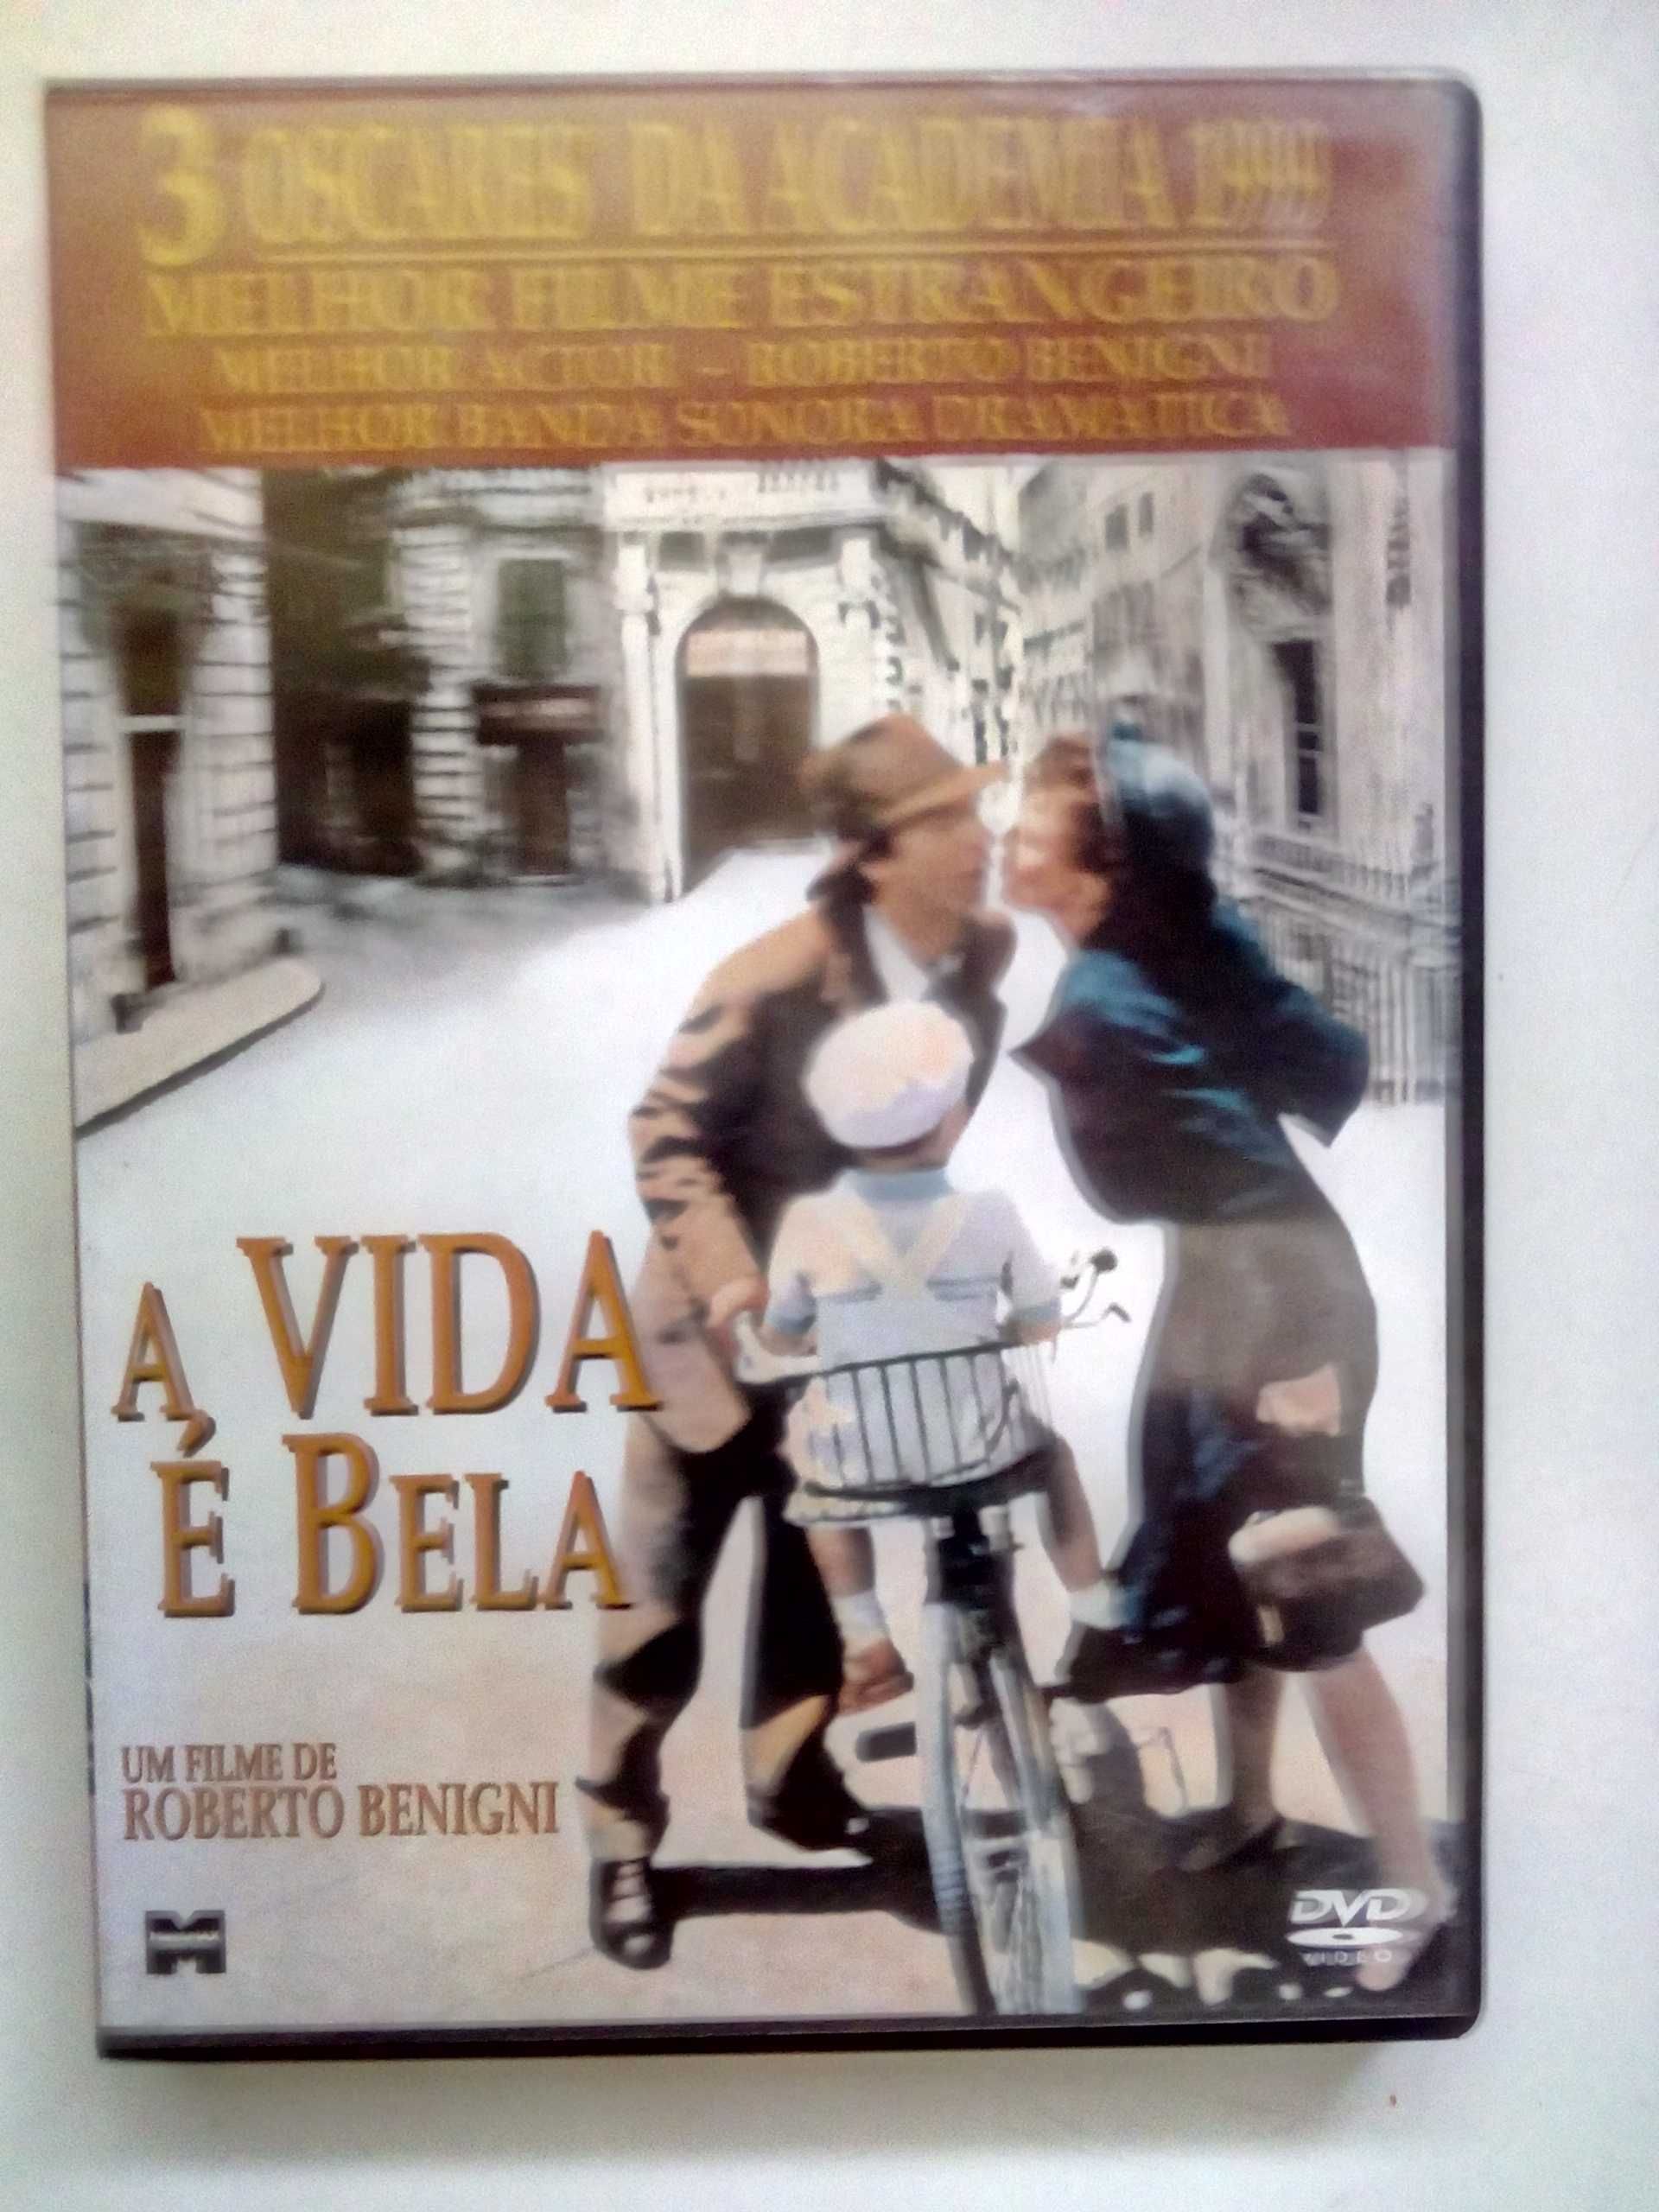 A vida é bela, de Roberto Benigni, dvd